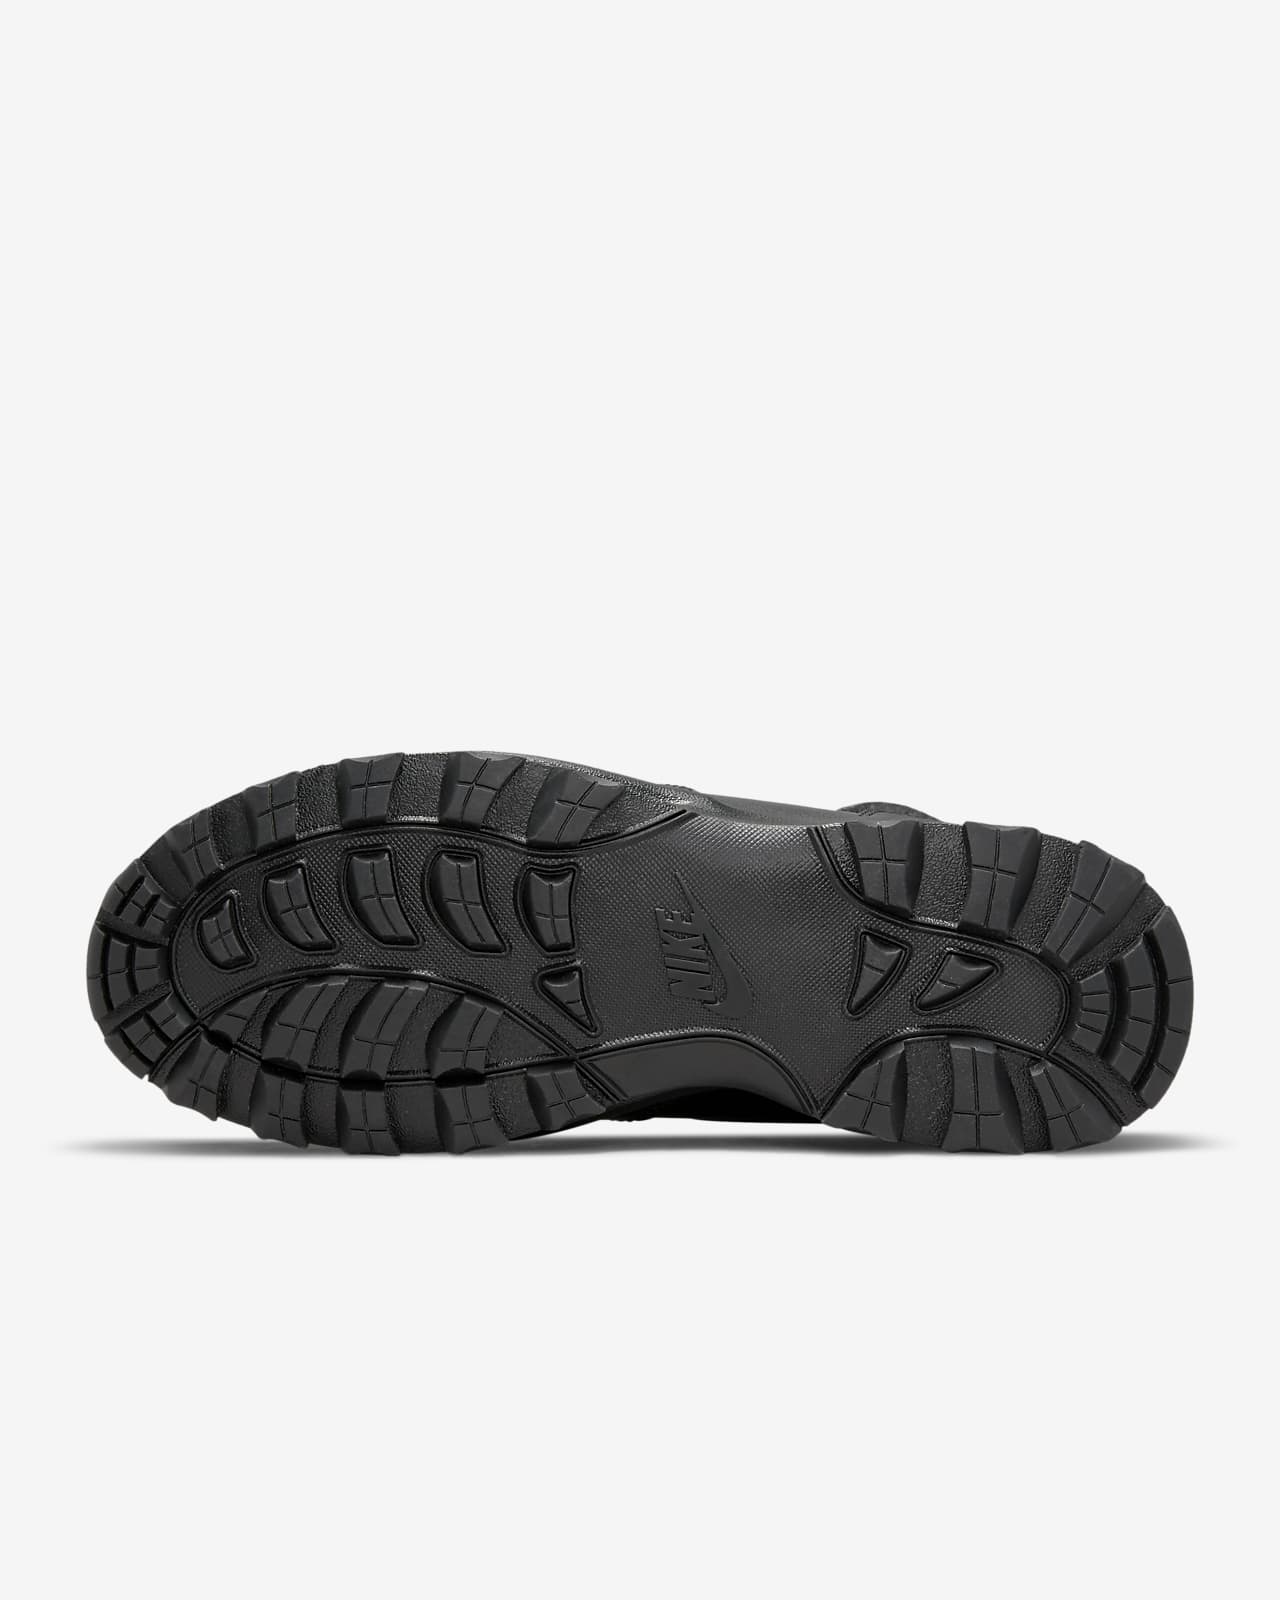 Botas para hombre Manoa Leather SE. Nike.com